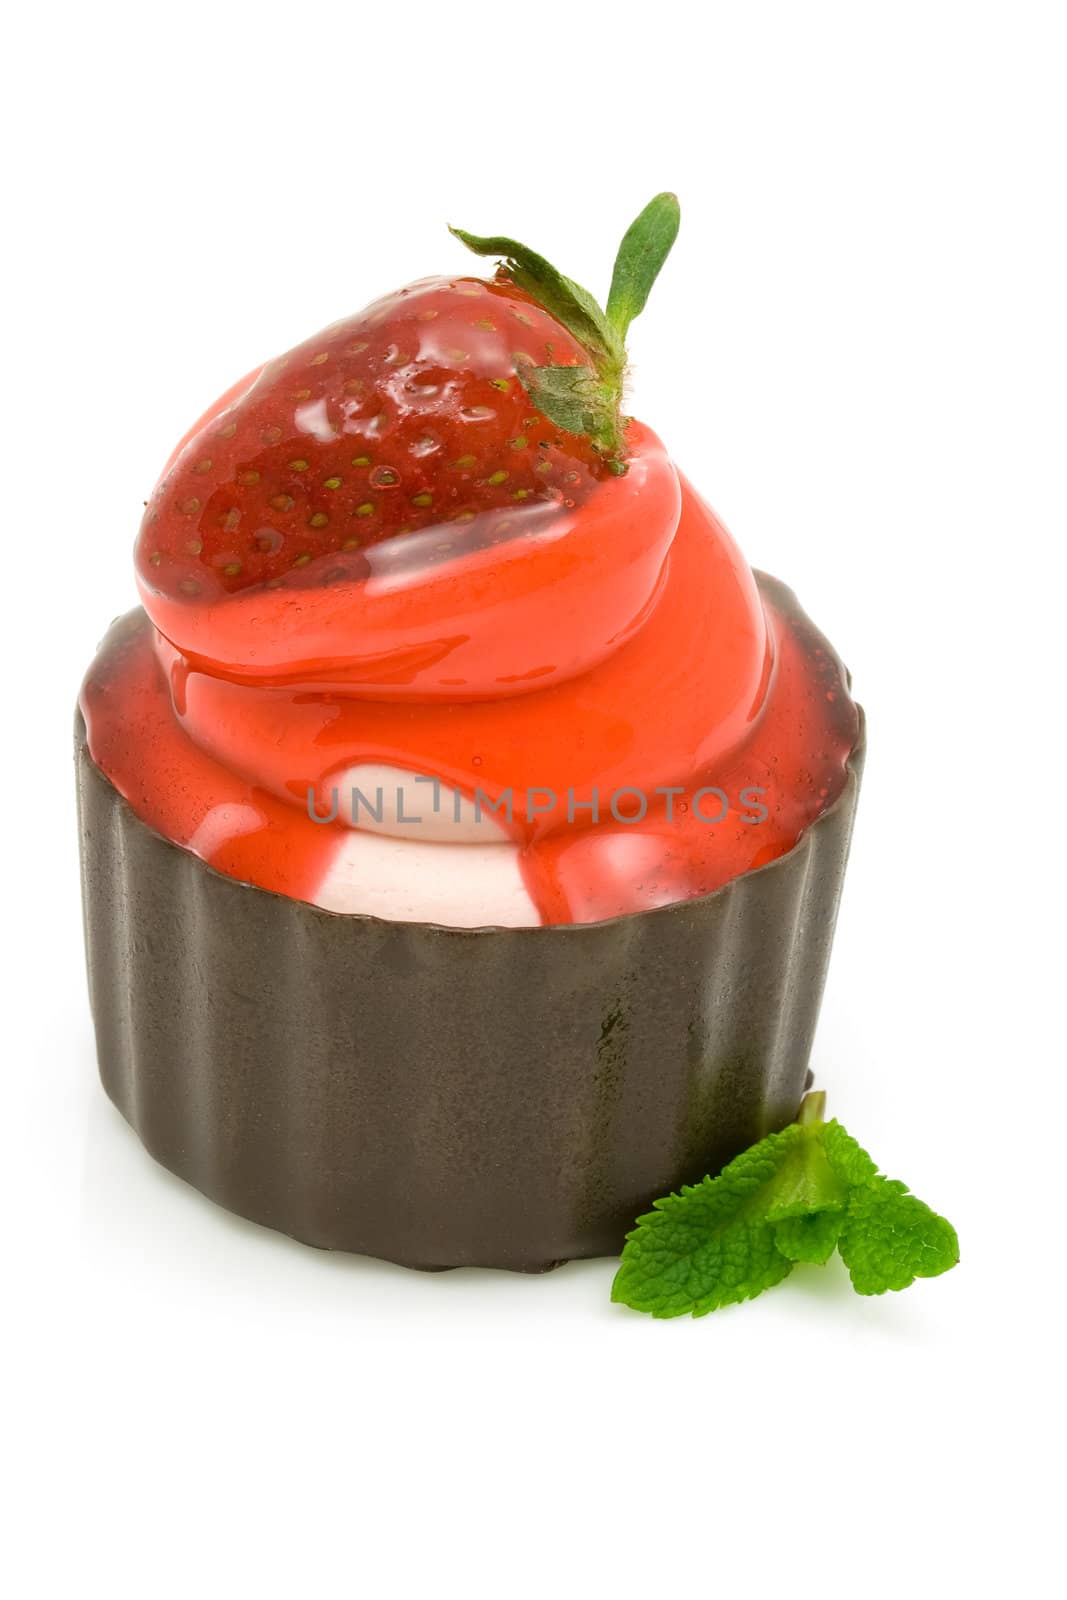 Strawberry cake by Hbak